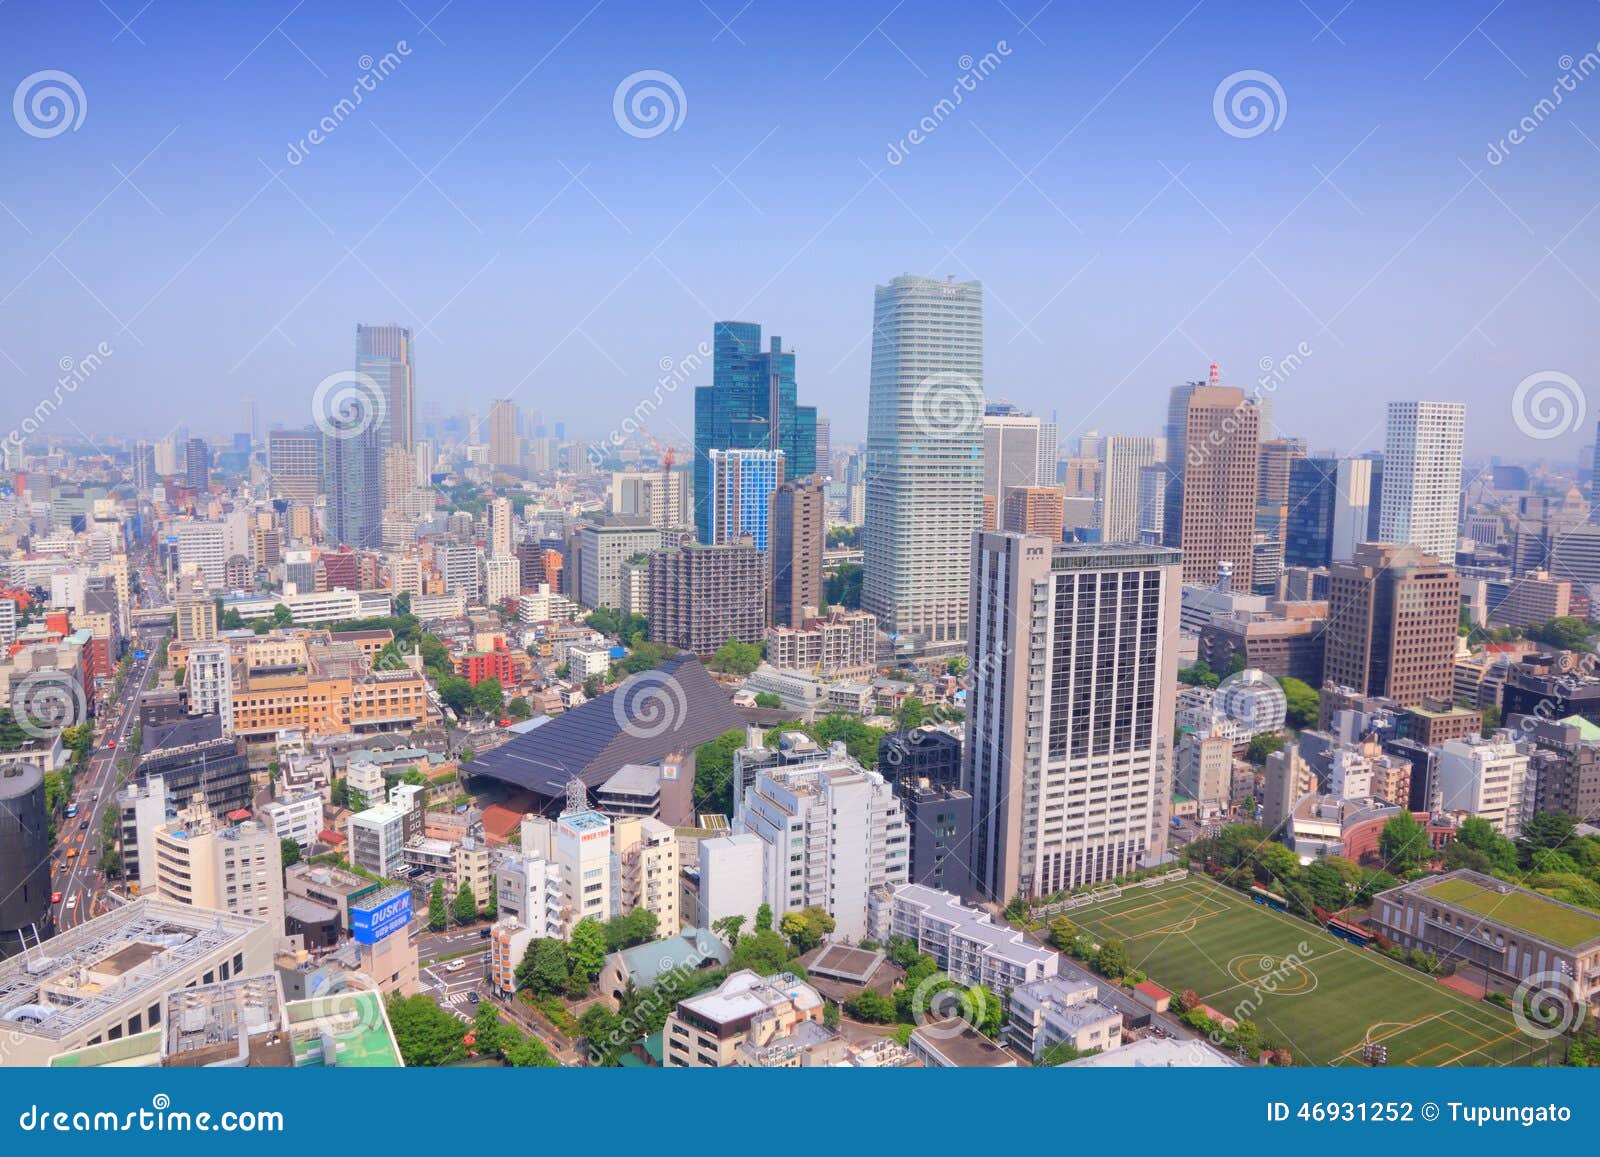 Japão - Tokyo. TÓQUIO, JAPÃO - 10 DE MAIO DE 2012: Opinião moderna da arquitetura da cidade no Tóquio, Japão O Tóquio é o capital de Japão e da área metropolitana a mais populoso no mundo com quase 36 milhões de pessoas